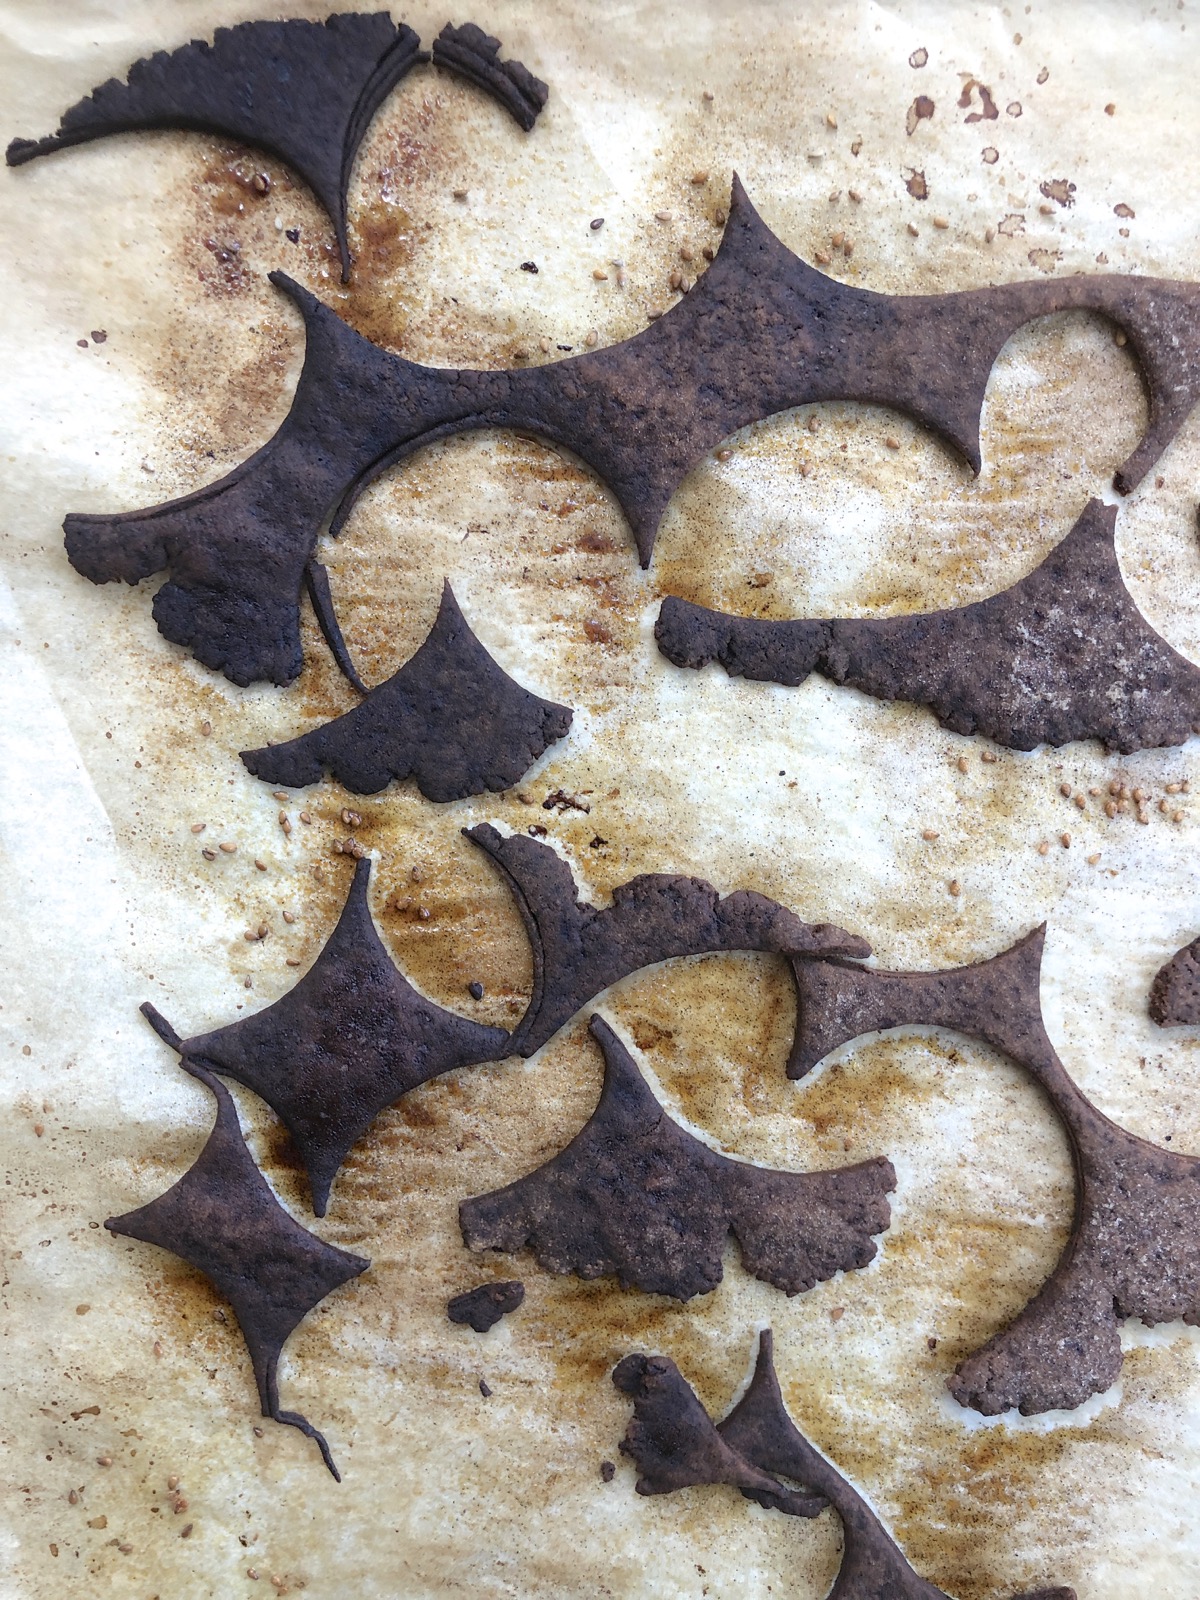 Burned pie crust scraps on a baking sheet.